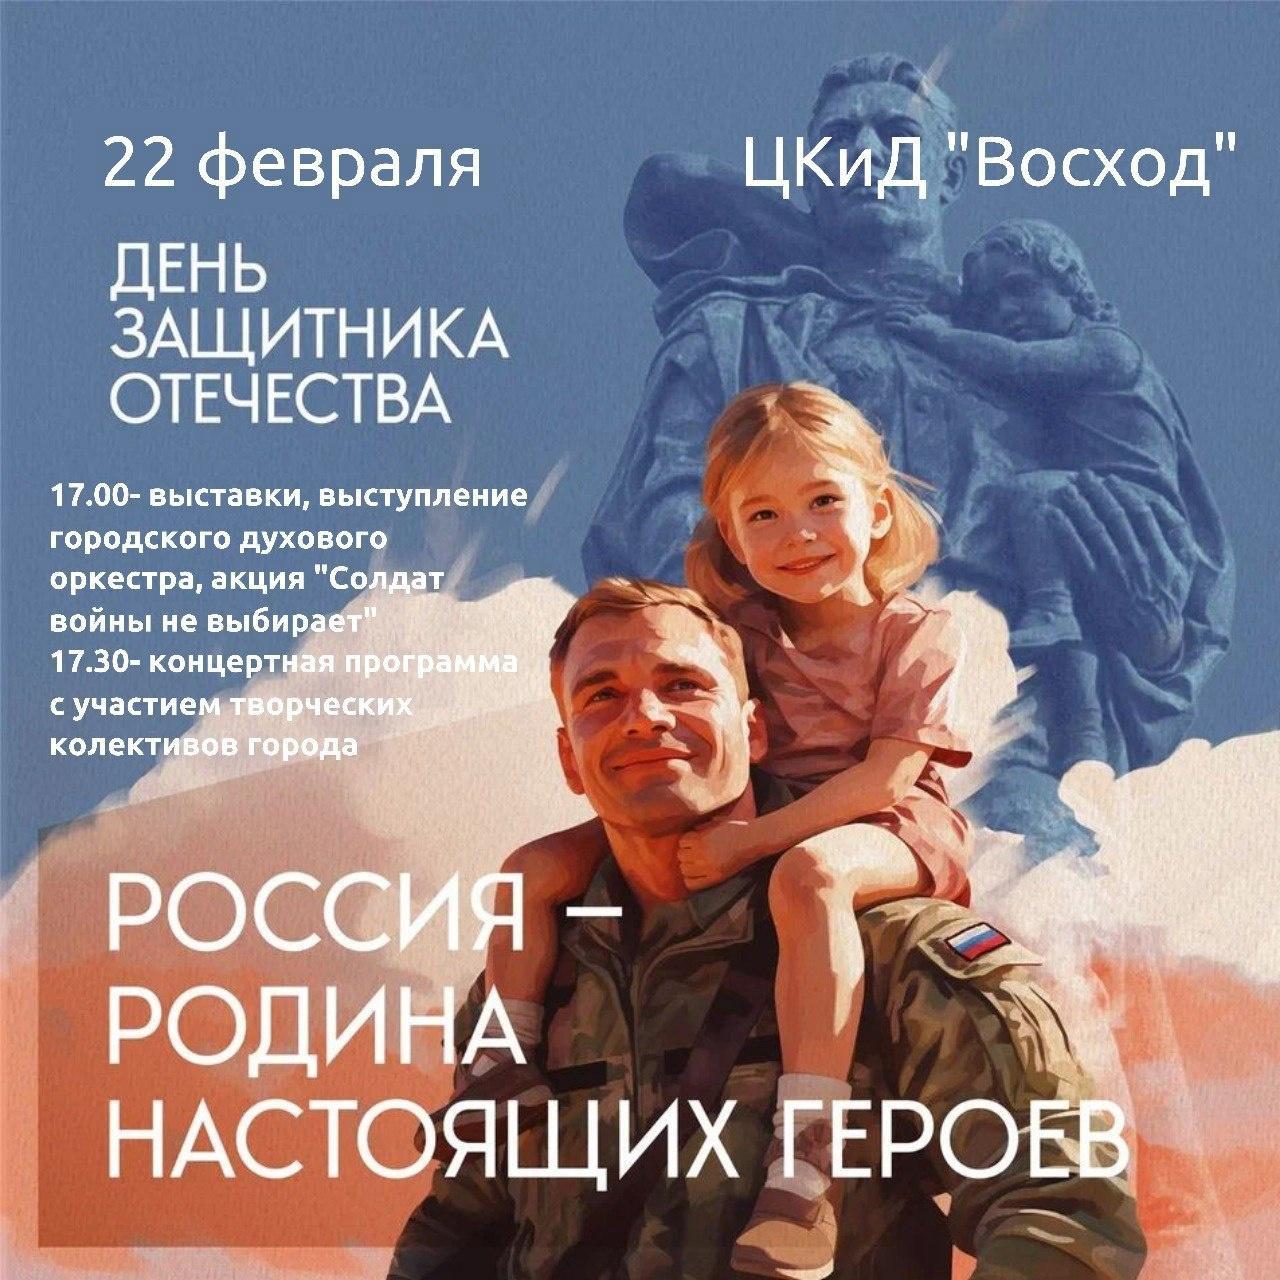 Приглашаем вас 22 февраля на концертную программу &quot;Россия - родина настоящих героев &quot;.